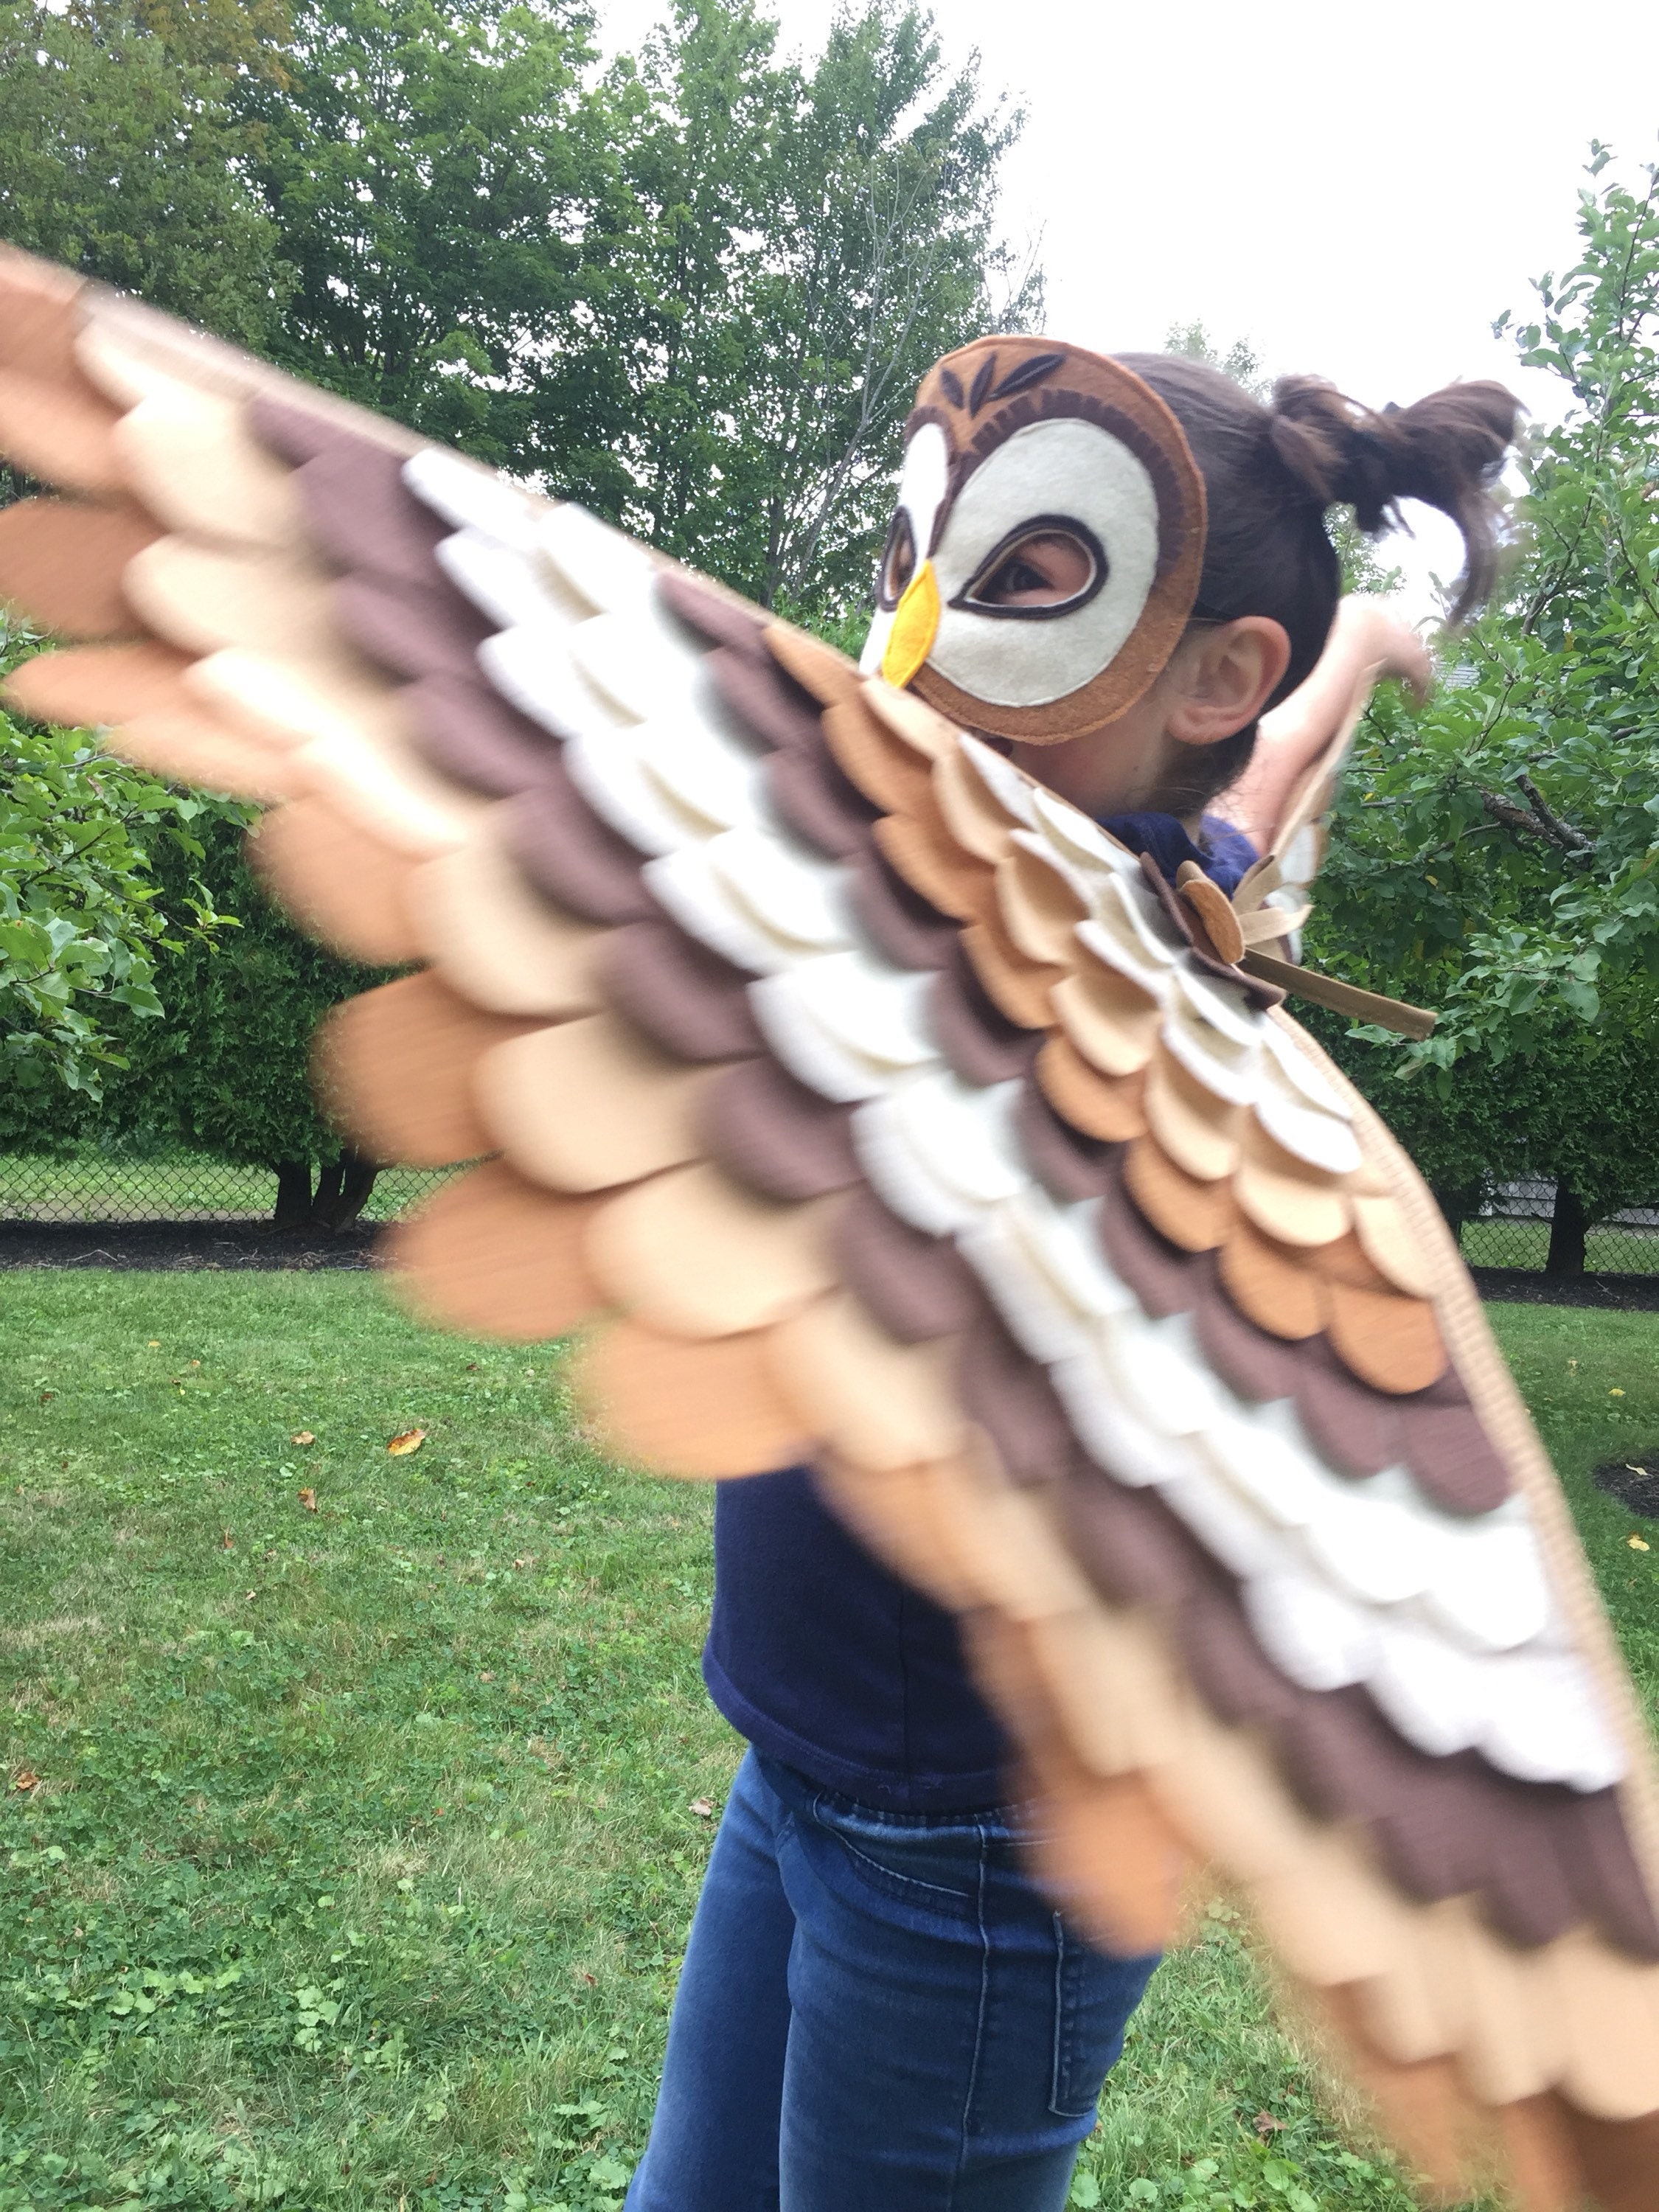 Human Sized Eagle Costume